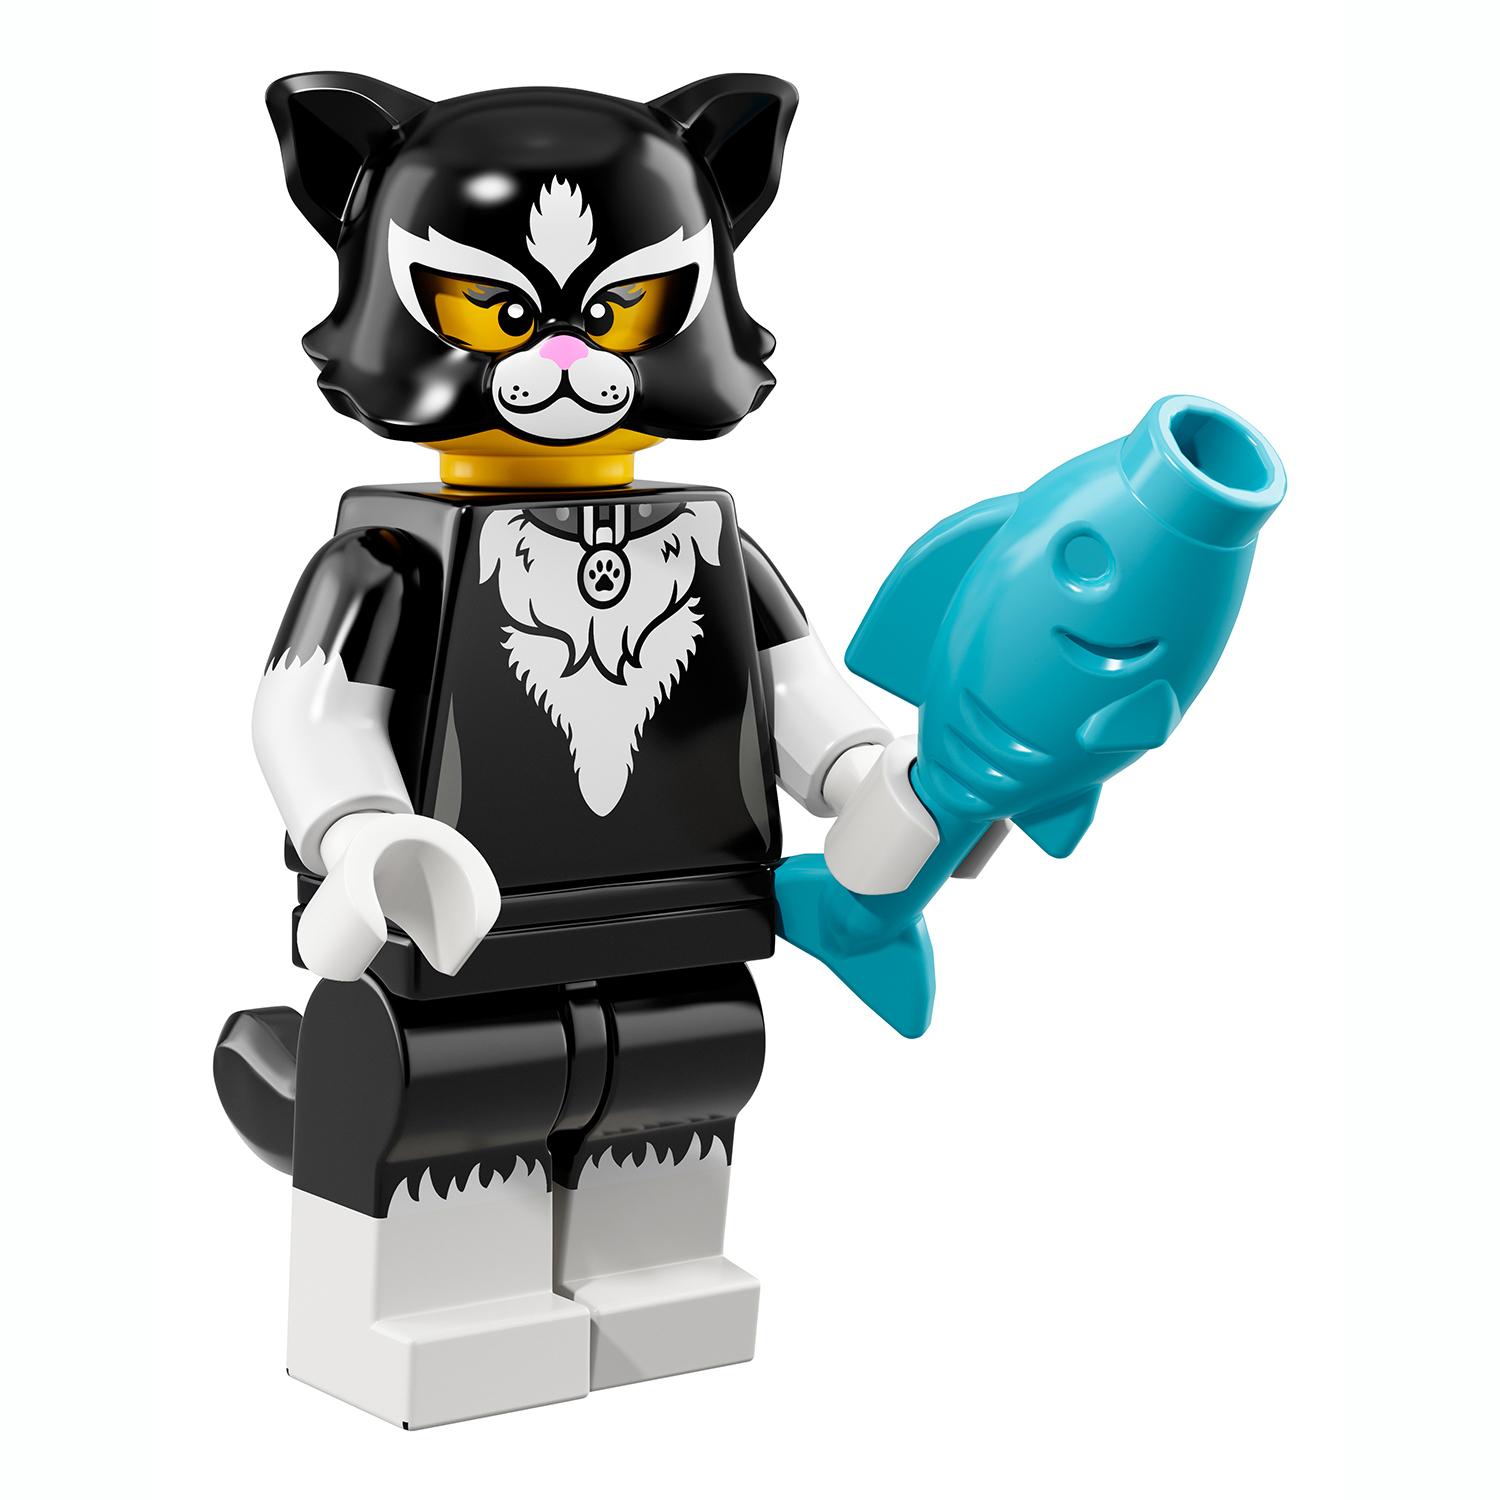 Lego Minifigures 71021-7 Девочка в костюме кошки